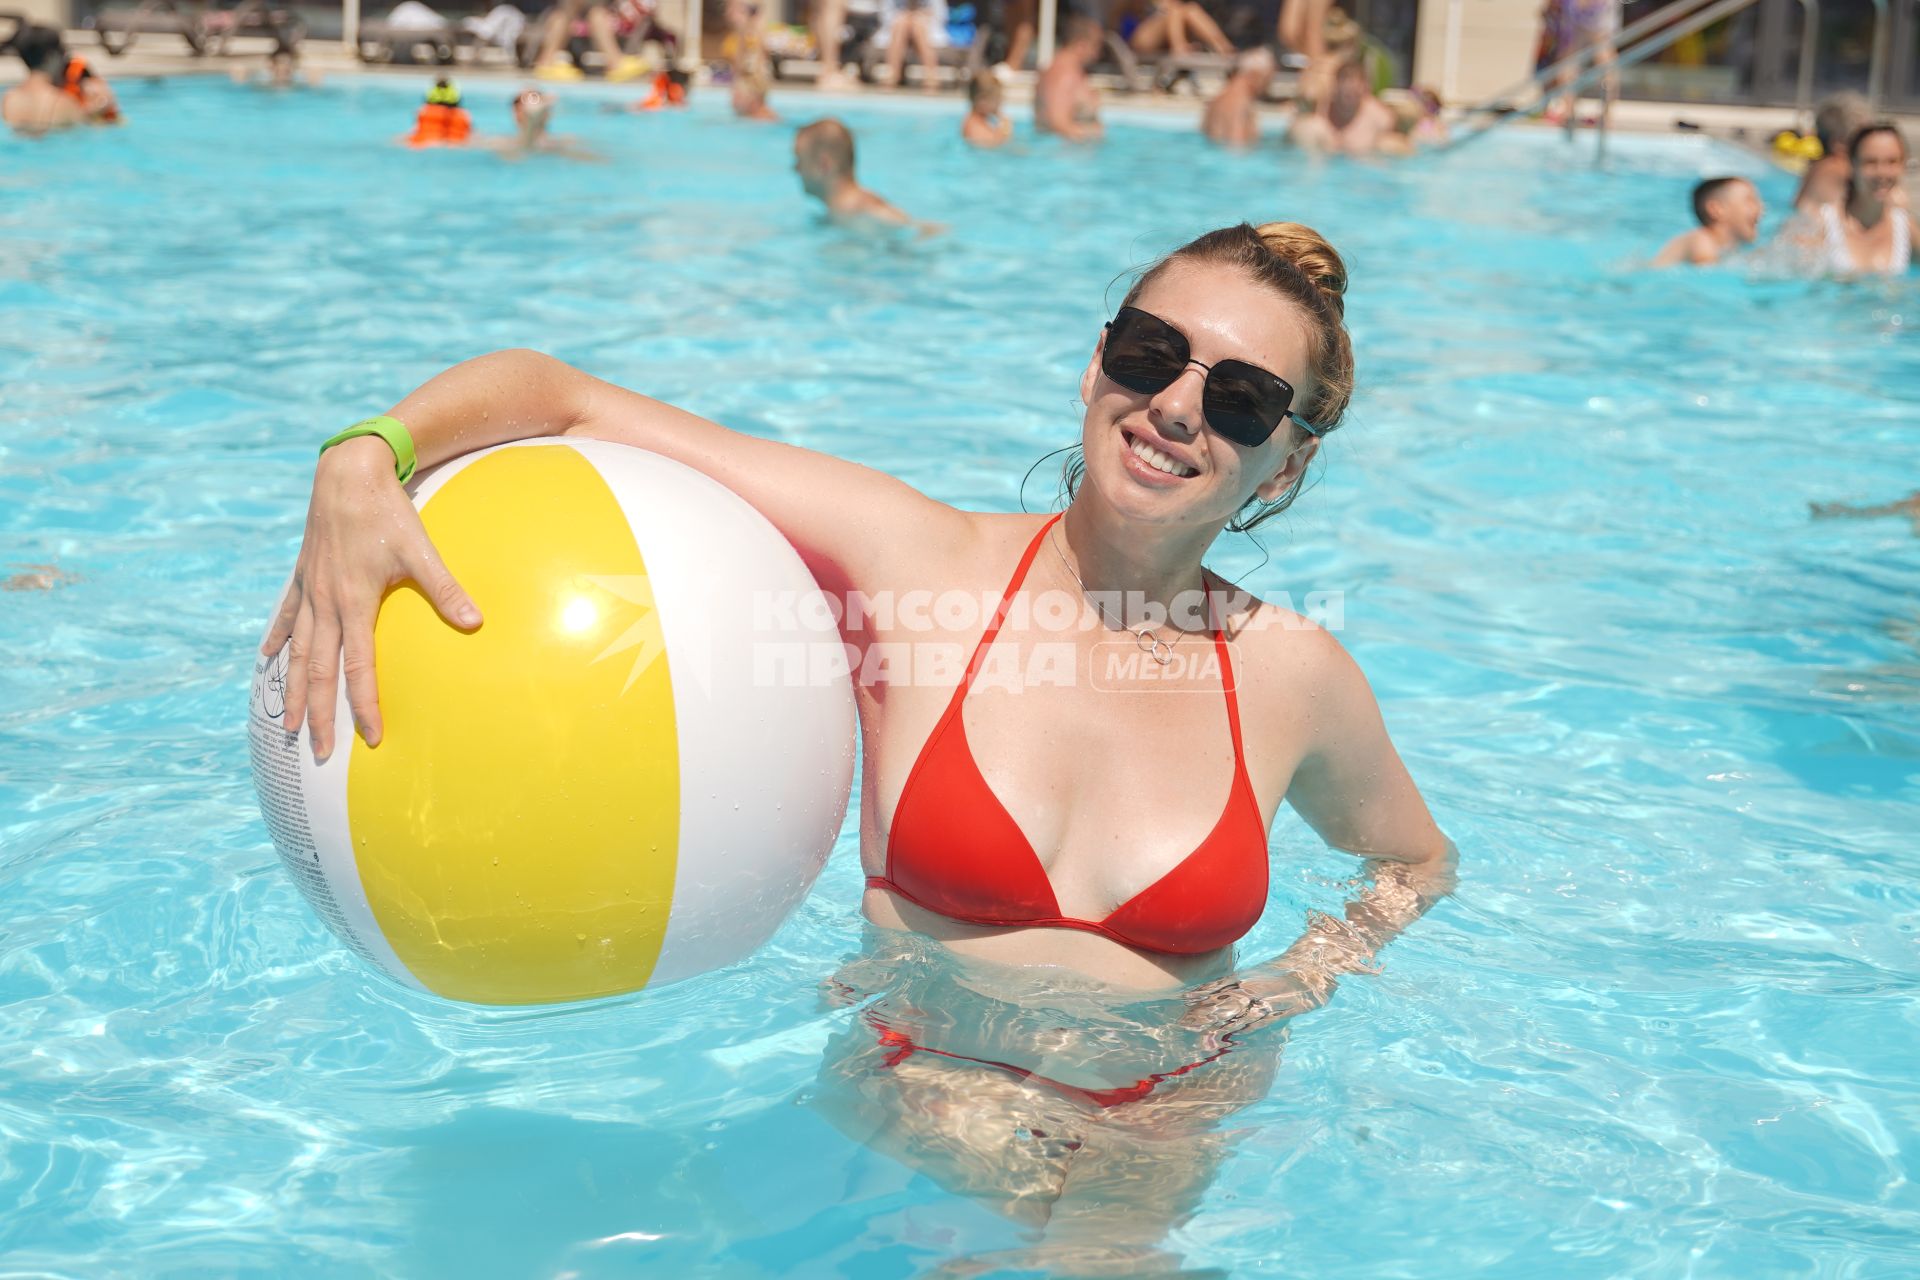 Самара. Девушка с надувным мячом плавает в бассейне.